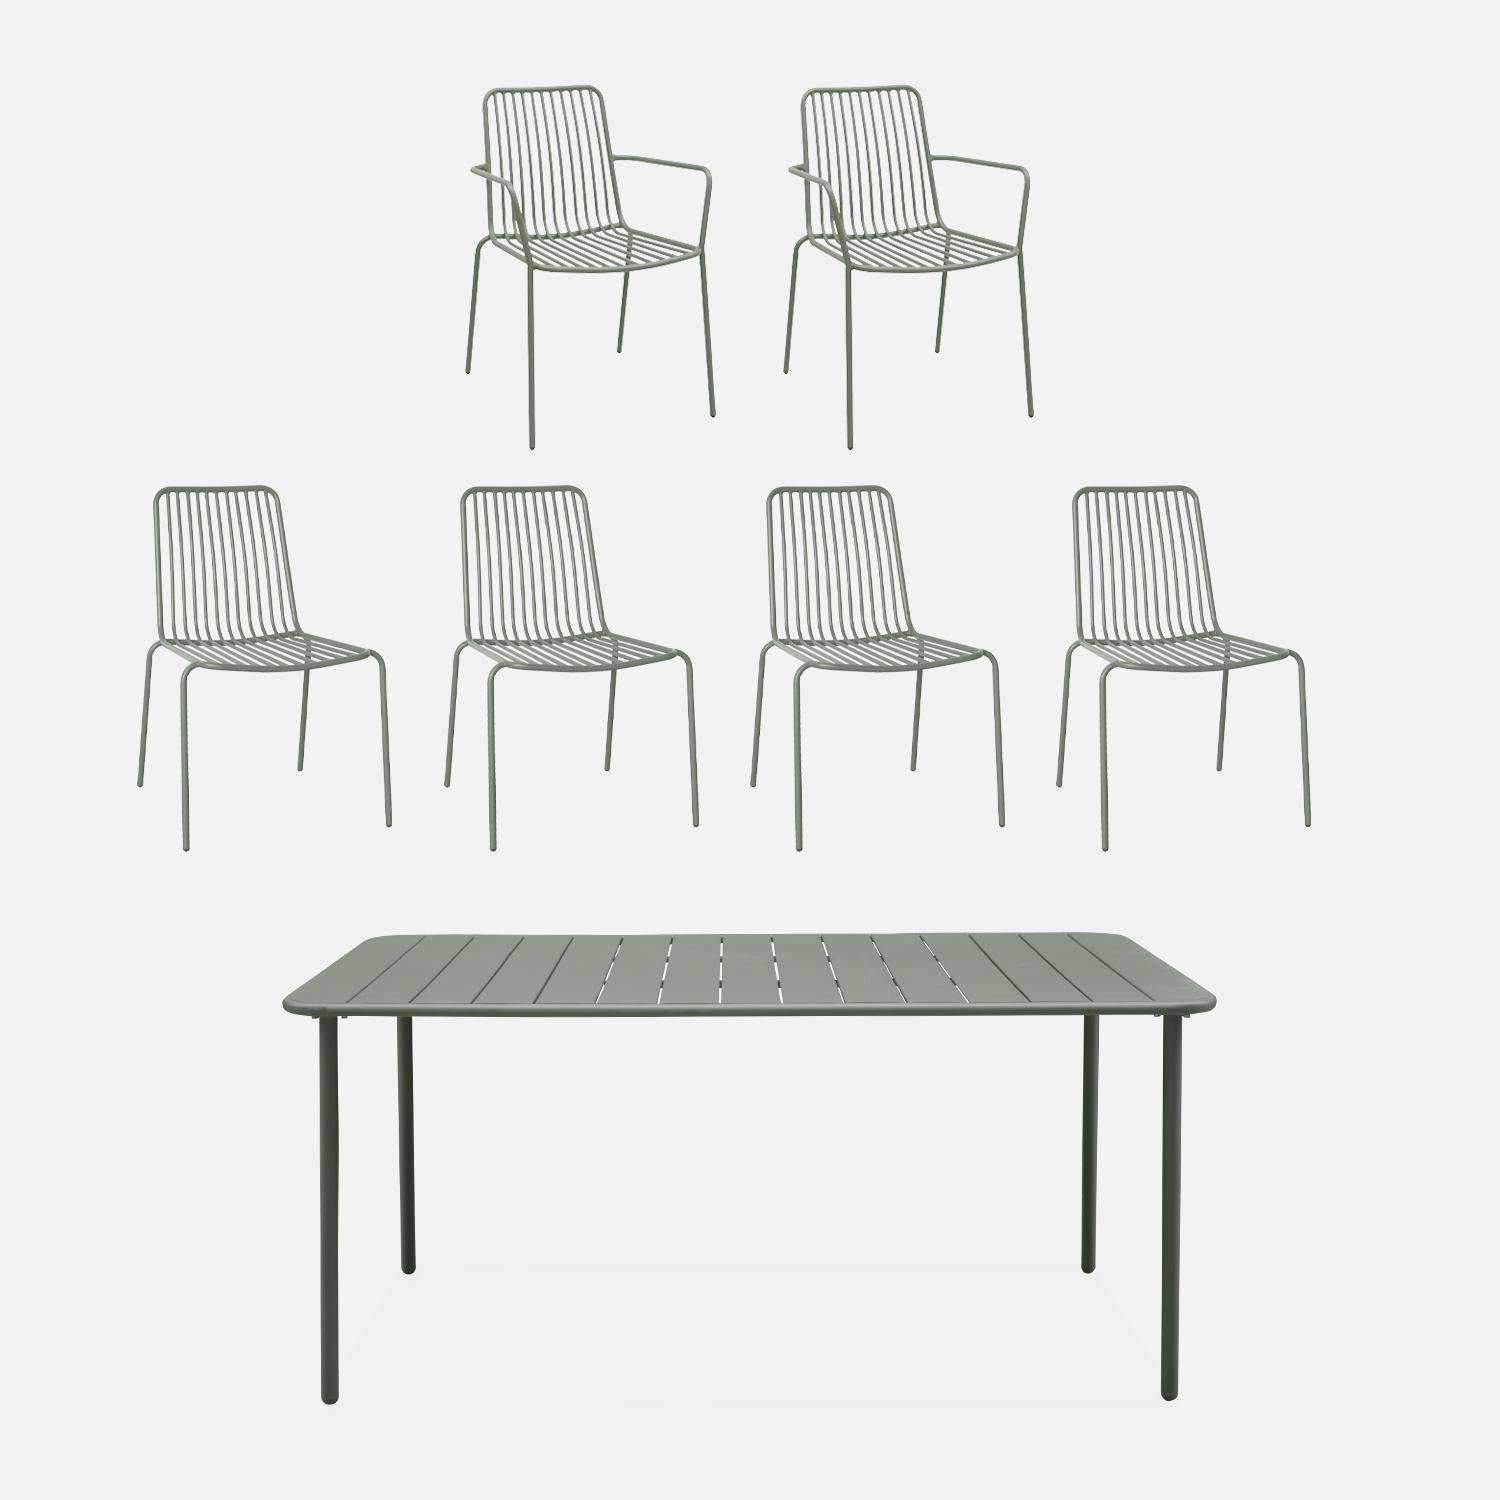 Table de jardin métal + 4 chaises et 2 fauteuils savane,sweeek,Photo1